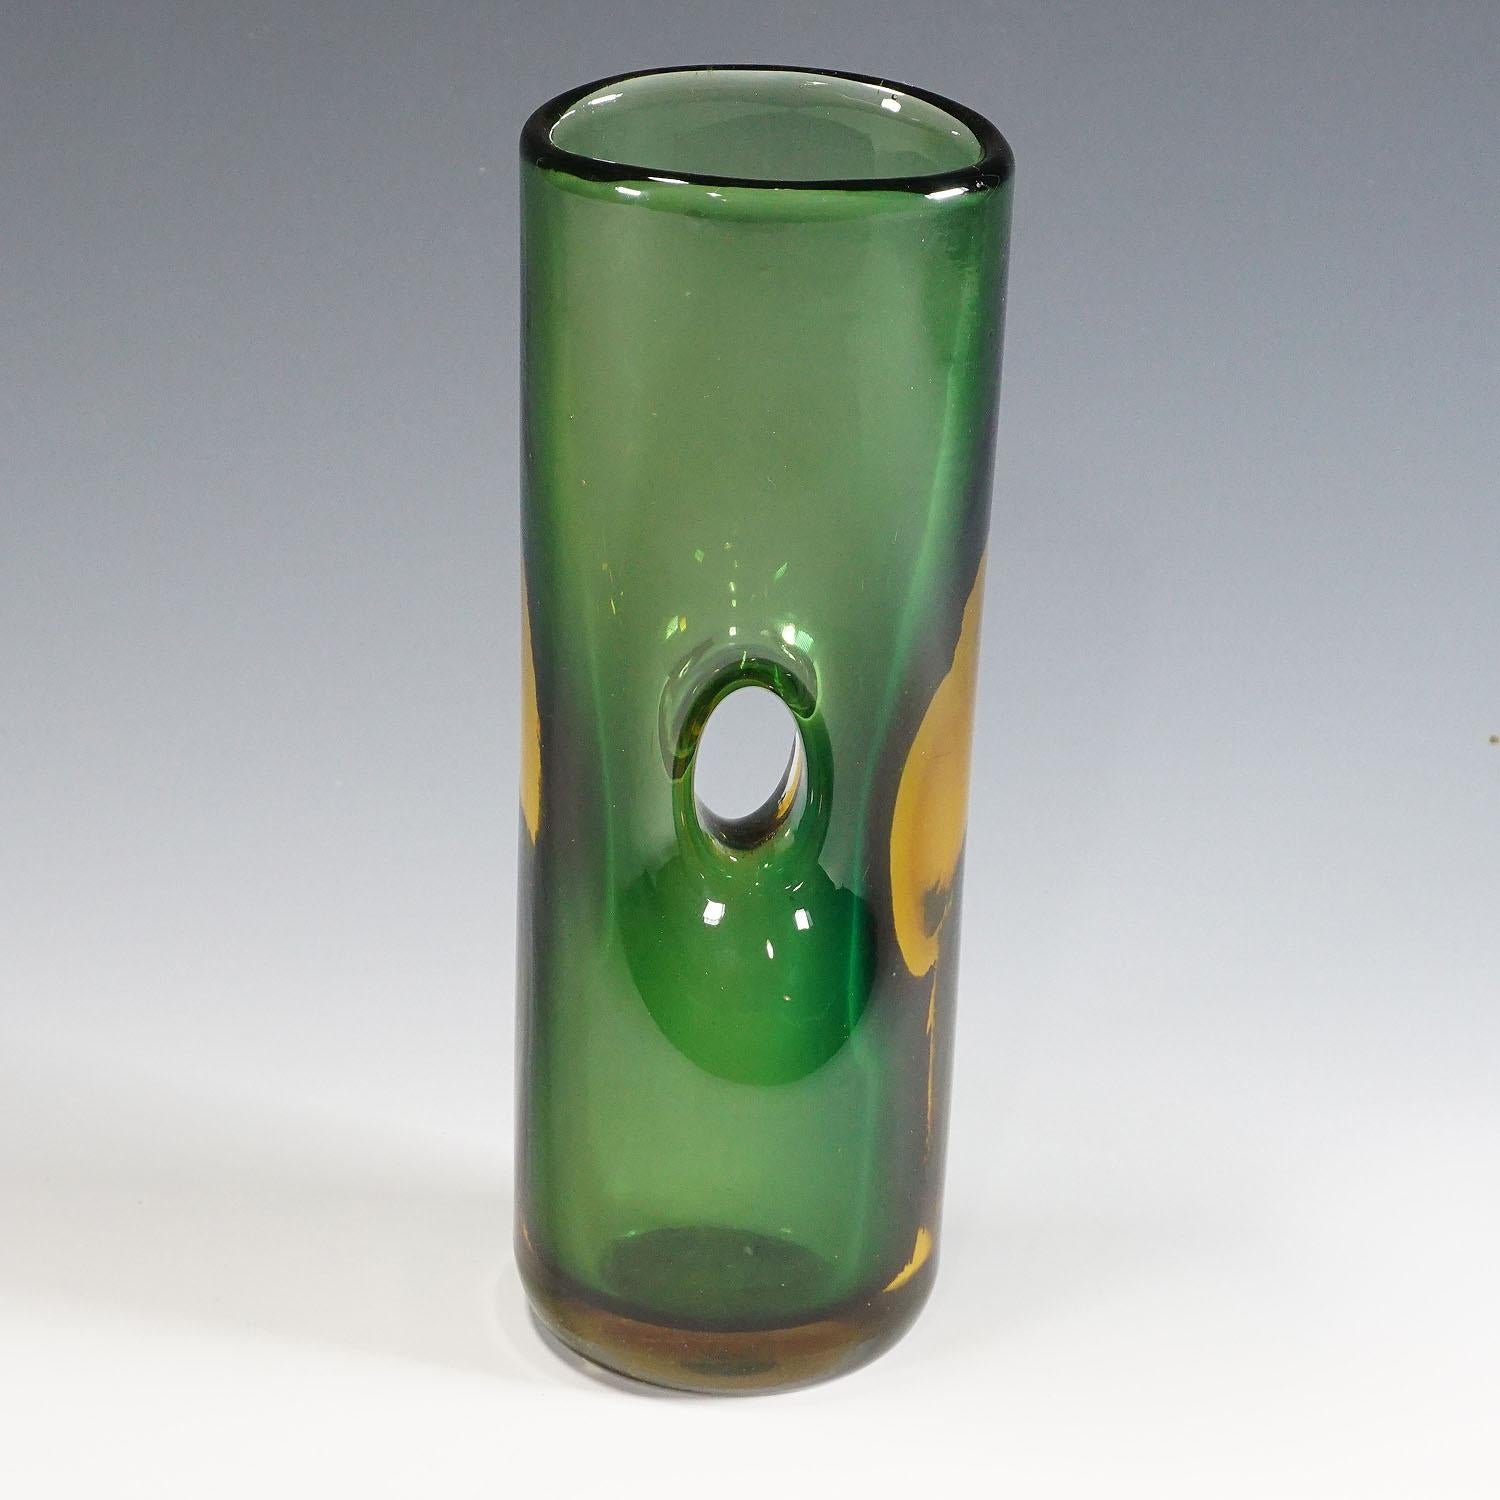 Tan France Auction Pick

Vase Forato en verre vert et ambré, conçu par Fulvio Bianconi en 1951, fabriqué par Venini, Venise, Italie, vers les années 1950. Le verre d'art porte la signature gravée 